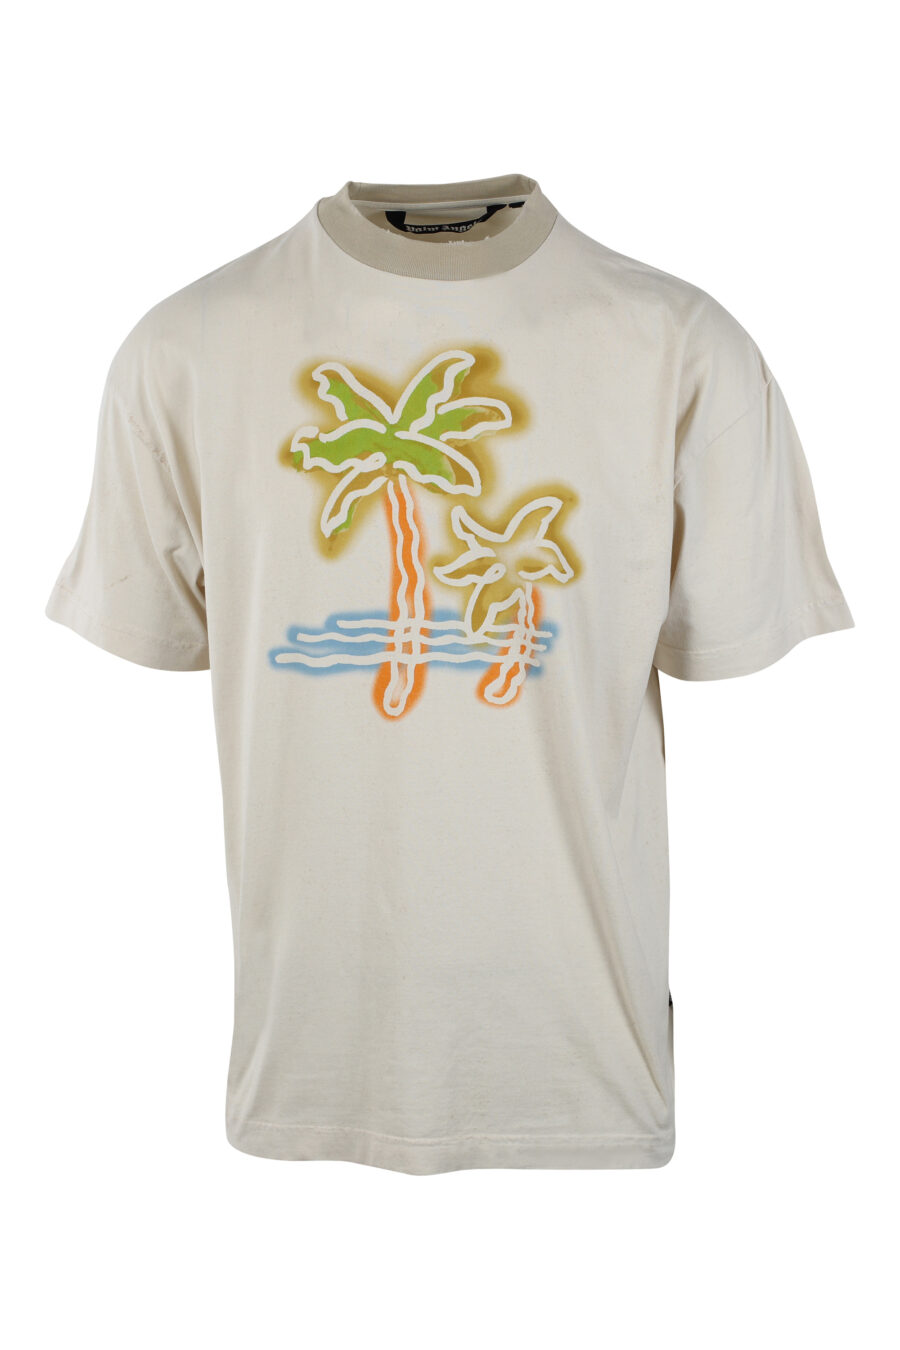 T-shirt bege com maxilogo de palmeira multicolorido e logótipo nas costas - IMG 2593